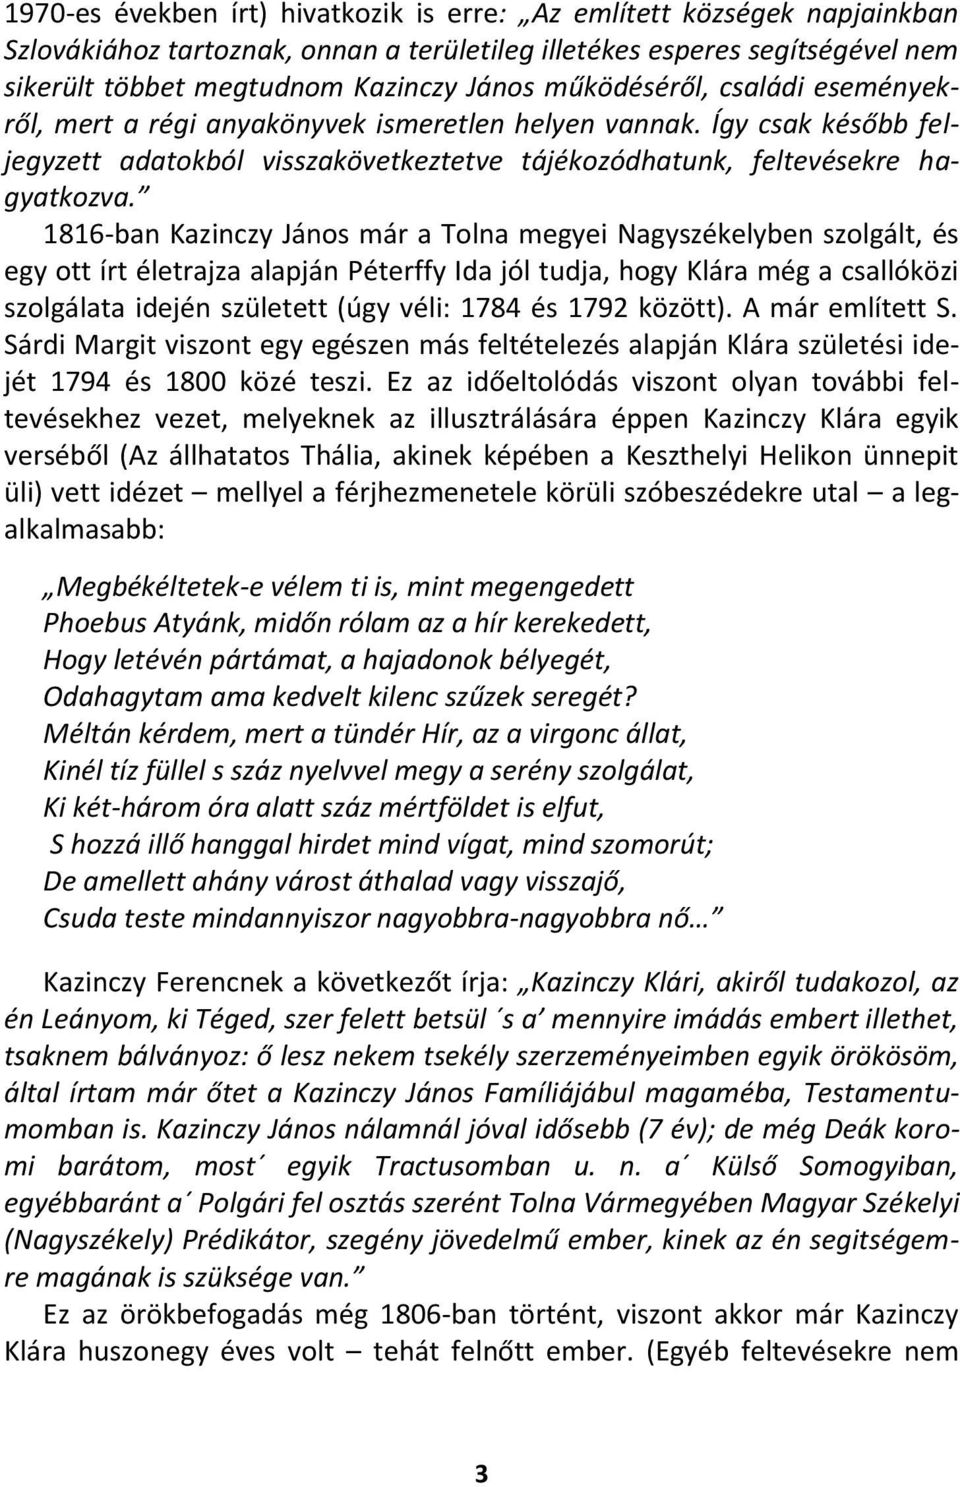 1816-ban Kazinczy János már a Tolna megyei Nagyszékelyben szolgált, és egy ott írt életrajza alapján Péterffy Ida jól tudja, hogy Klára még a csallóközi szolgálata idején született (úgy véli: 1784 és